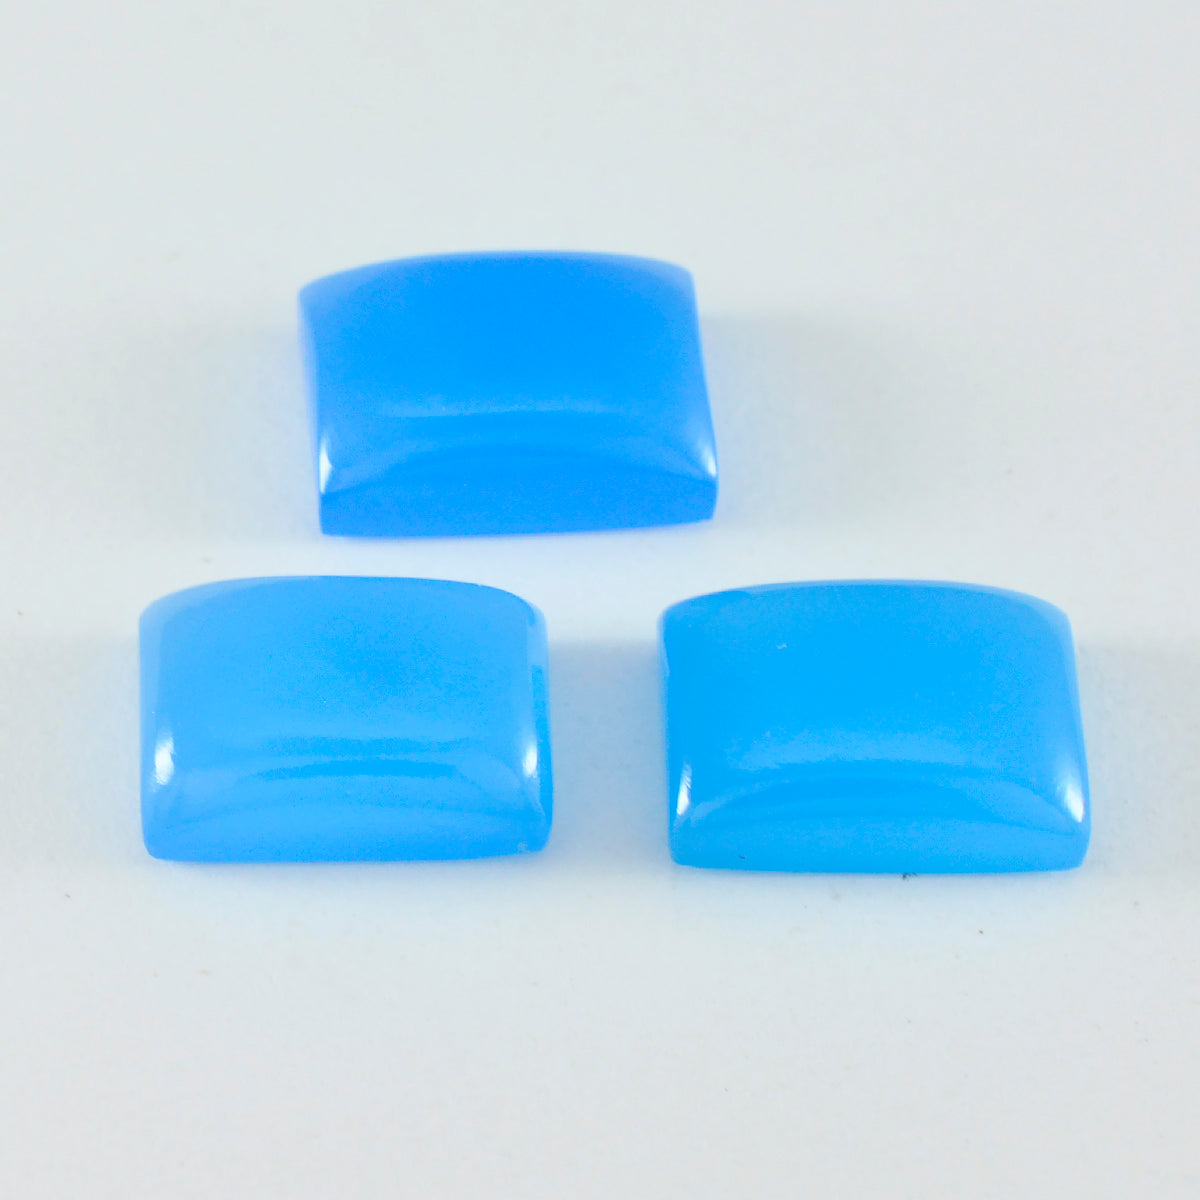 Riyogems 1 pieza cabujón de calcedonia azul 12x16 mm forma octágono piedra preciosa de calidad bonita